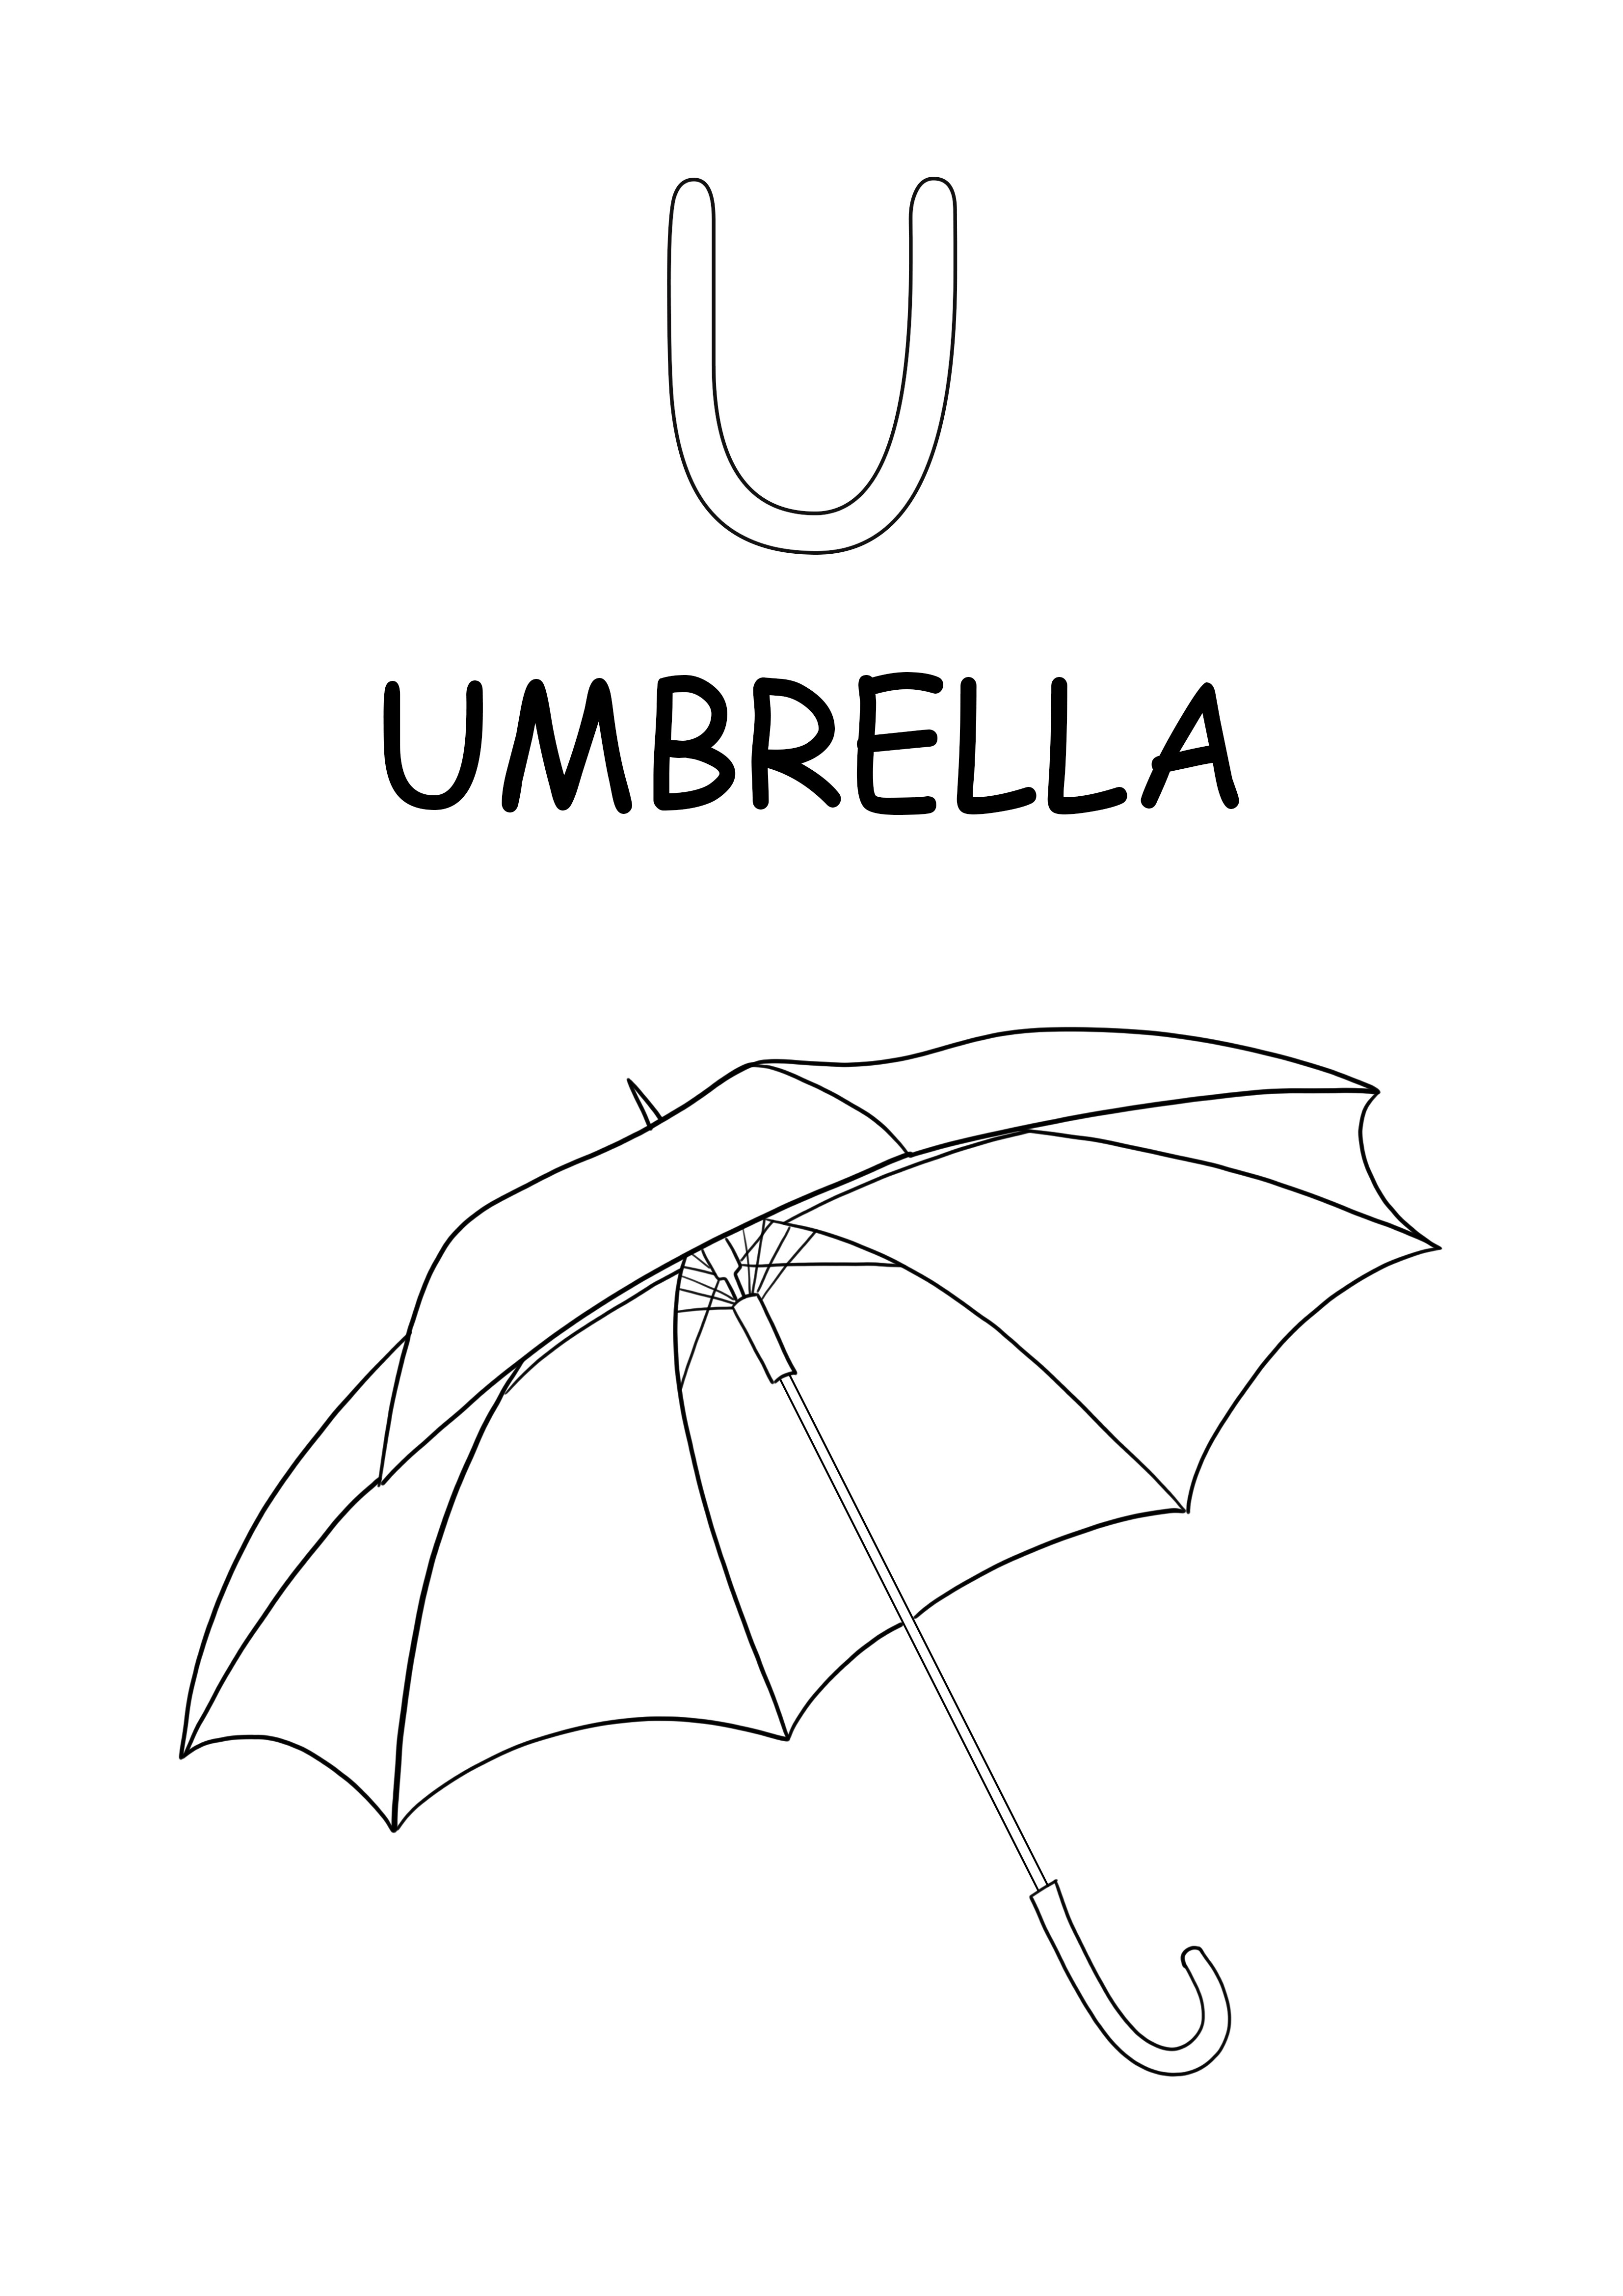 Der Großbuchstabe U steht für das kostenlose Drucken und Herunterladen von Regenschirmwörtern